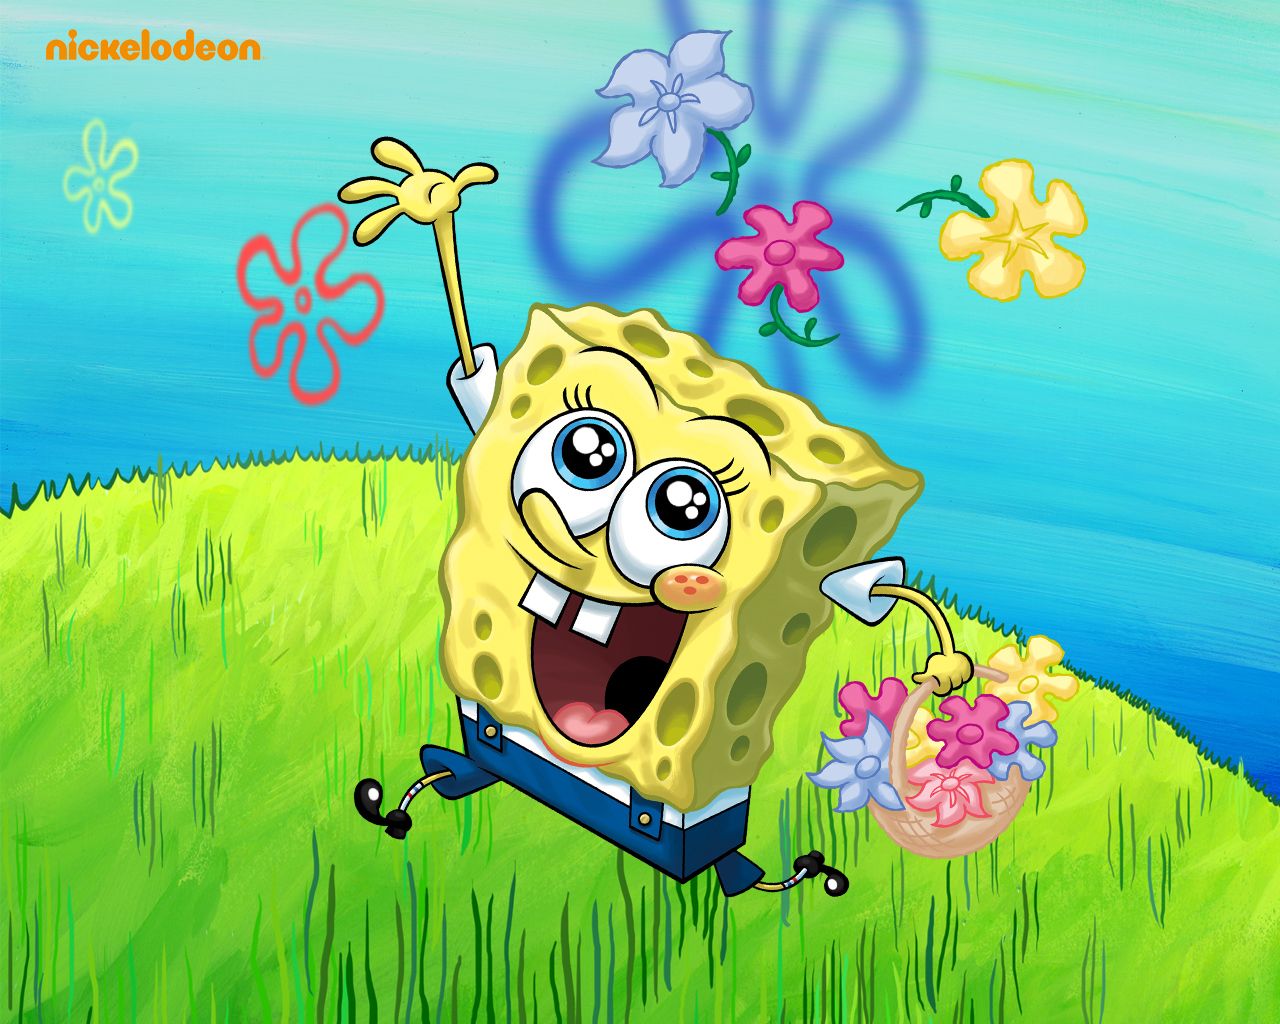 Spongebob Squarepants - Spongebob Squarepants Wallpaper (31281685 ...